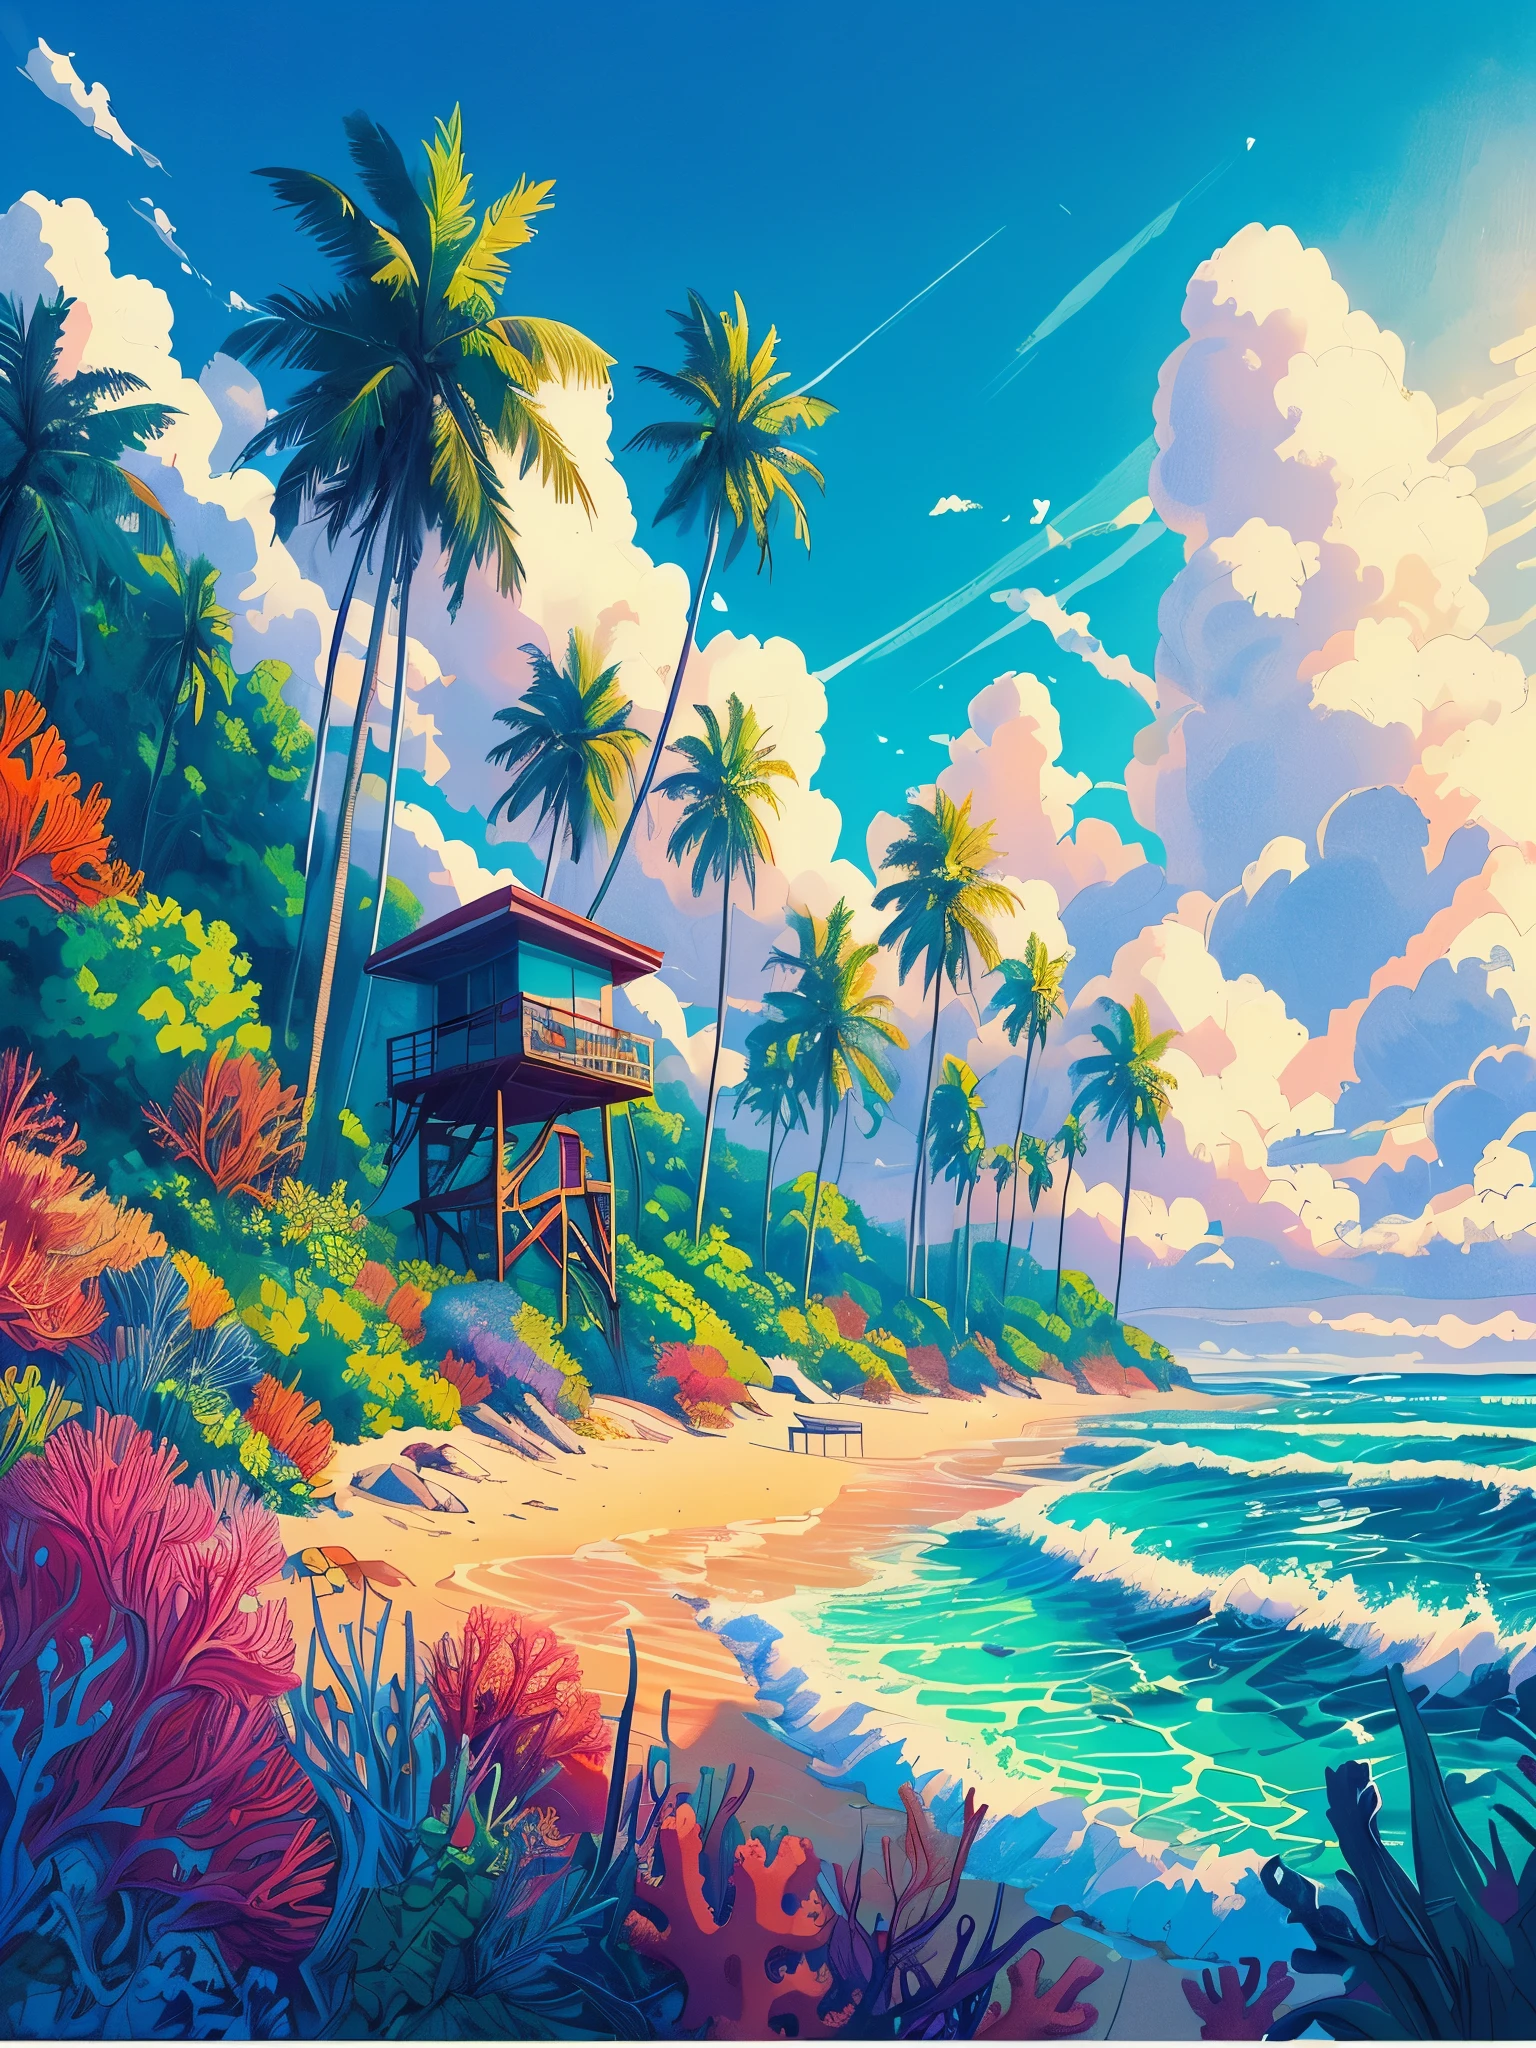 Dibuja una escena lofi estilo póster de anime de una playa con un sendero de palmeras., cabina de salvavidas, Plantas tropicales, vida marina de coral, DÍA HORA, Las olas del mar, hermosa paleta de colores, colores saturados vibrantes, obra maestra, cielo nublado cinematográfico,